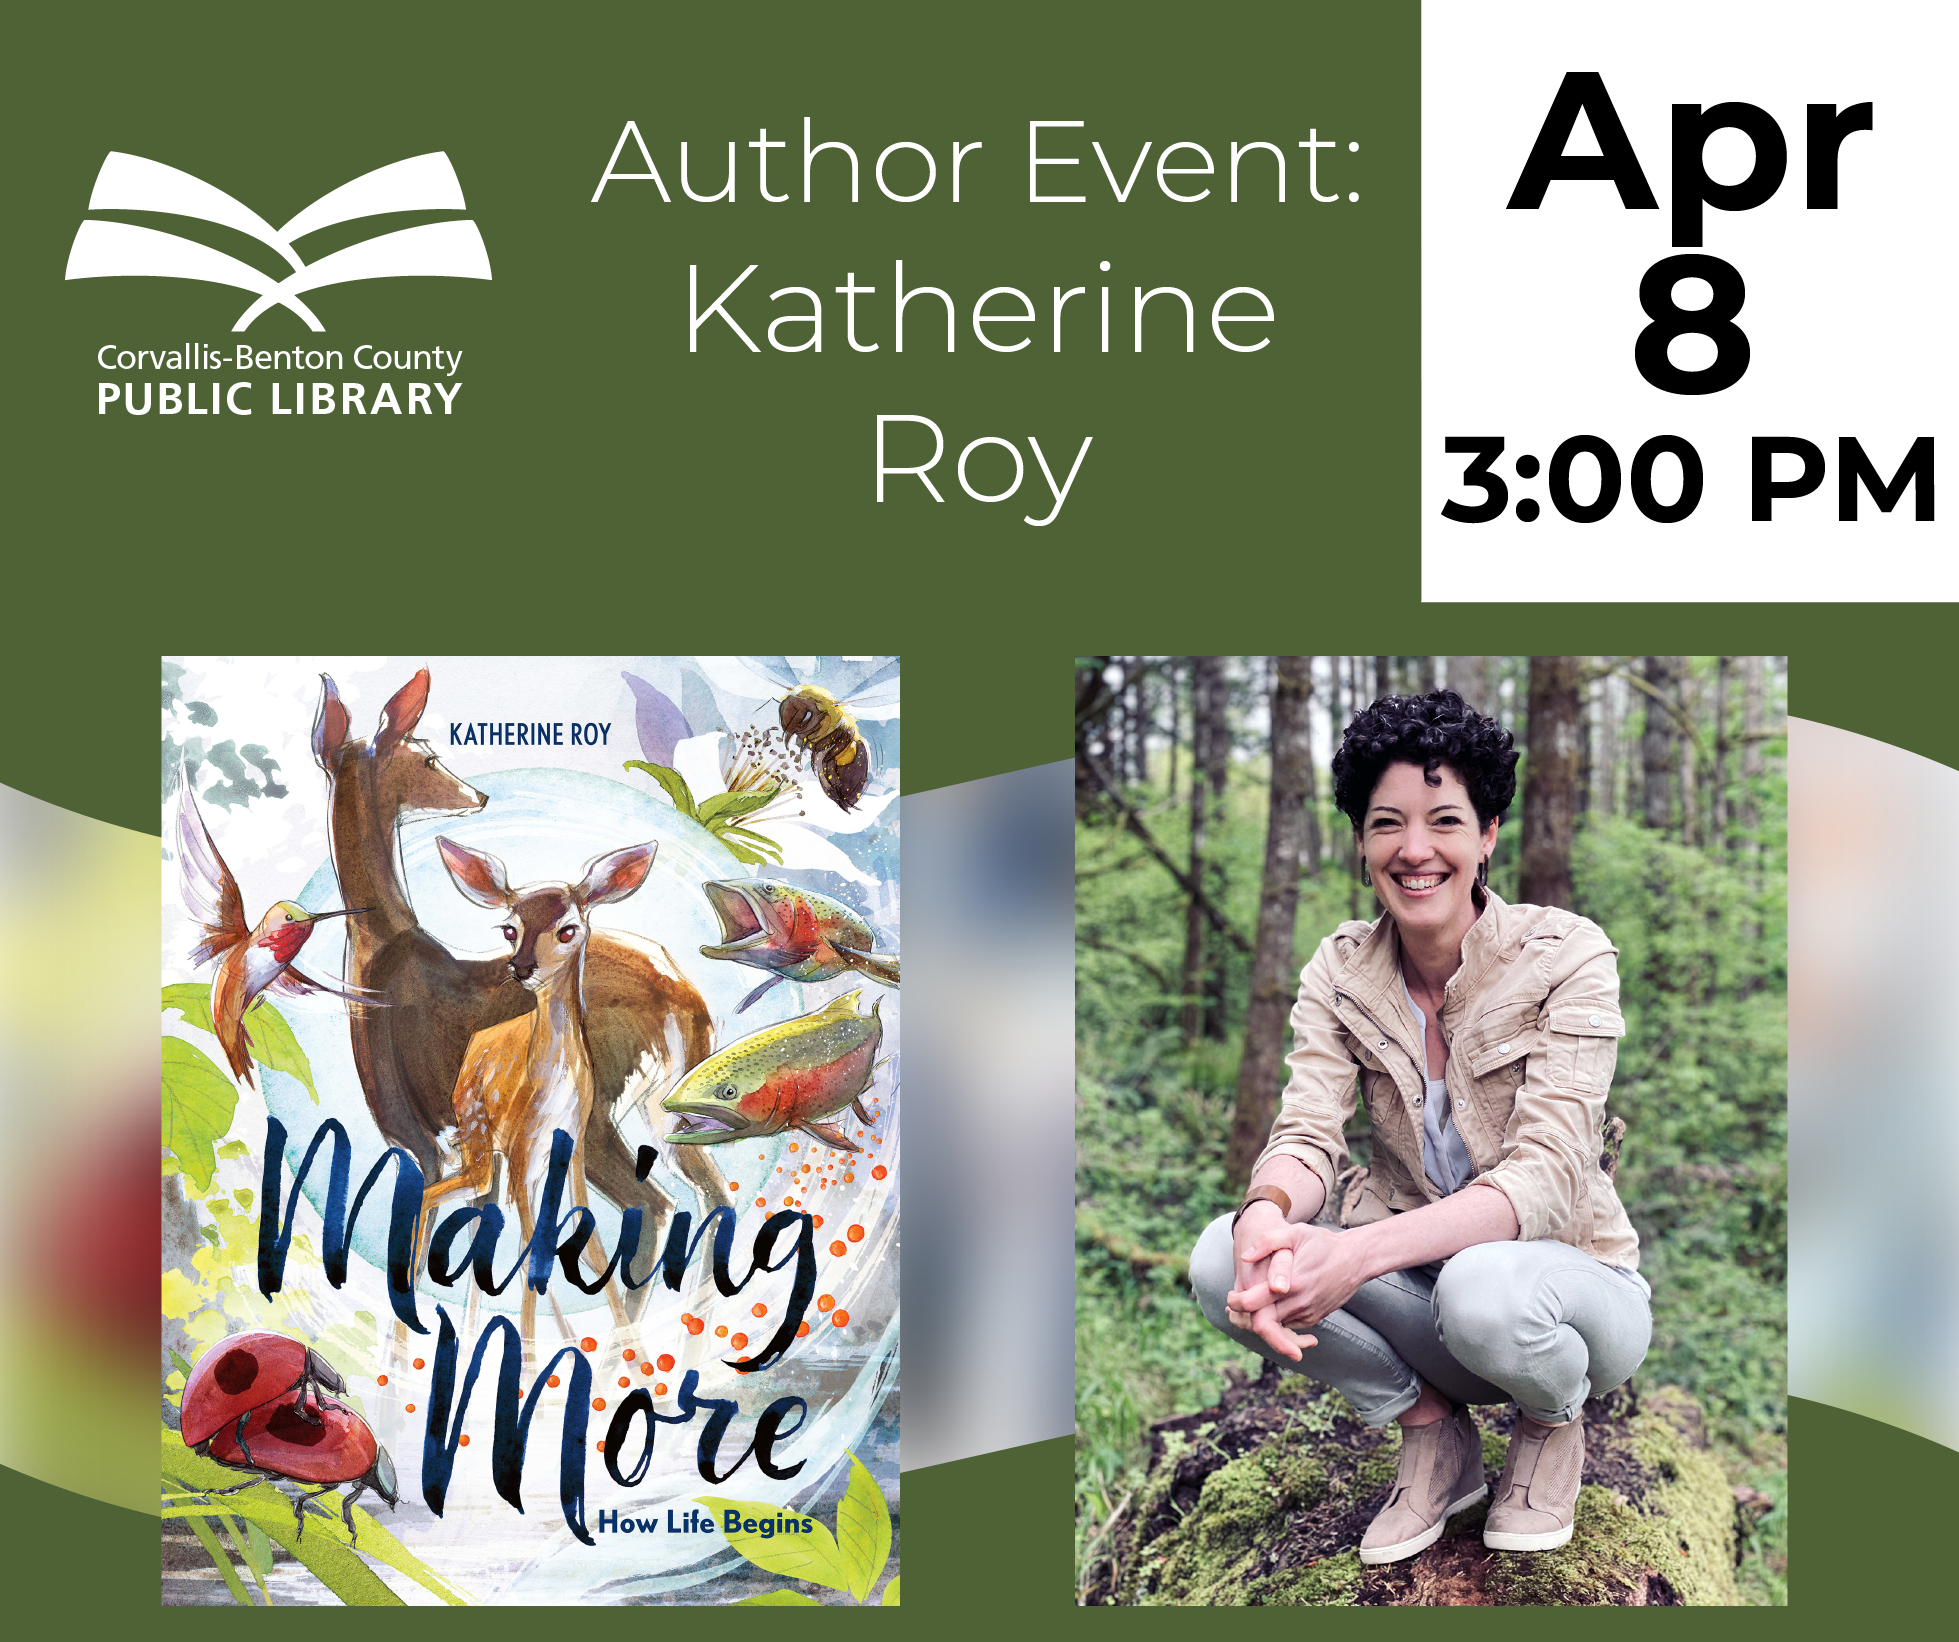 Author Event: Katherine Roy, April 8, 3:00 PM